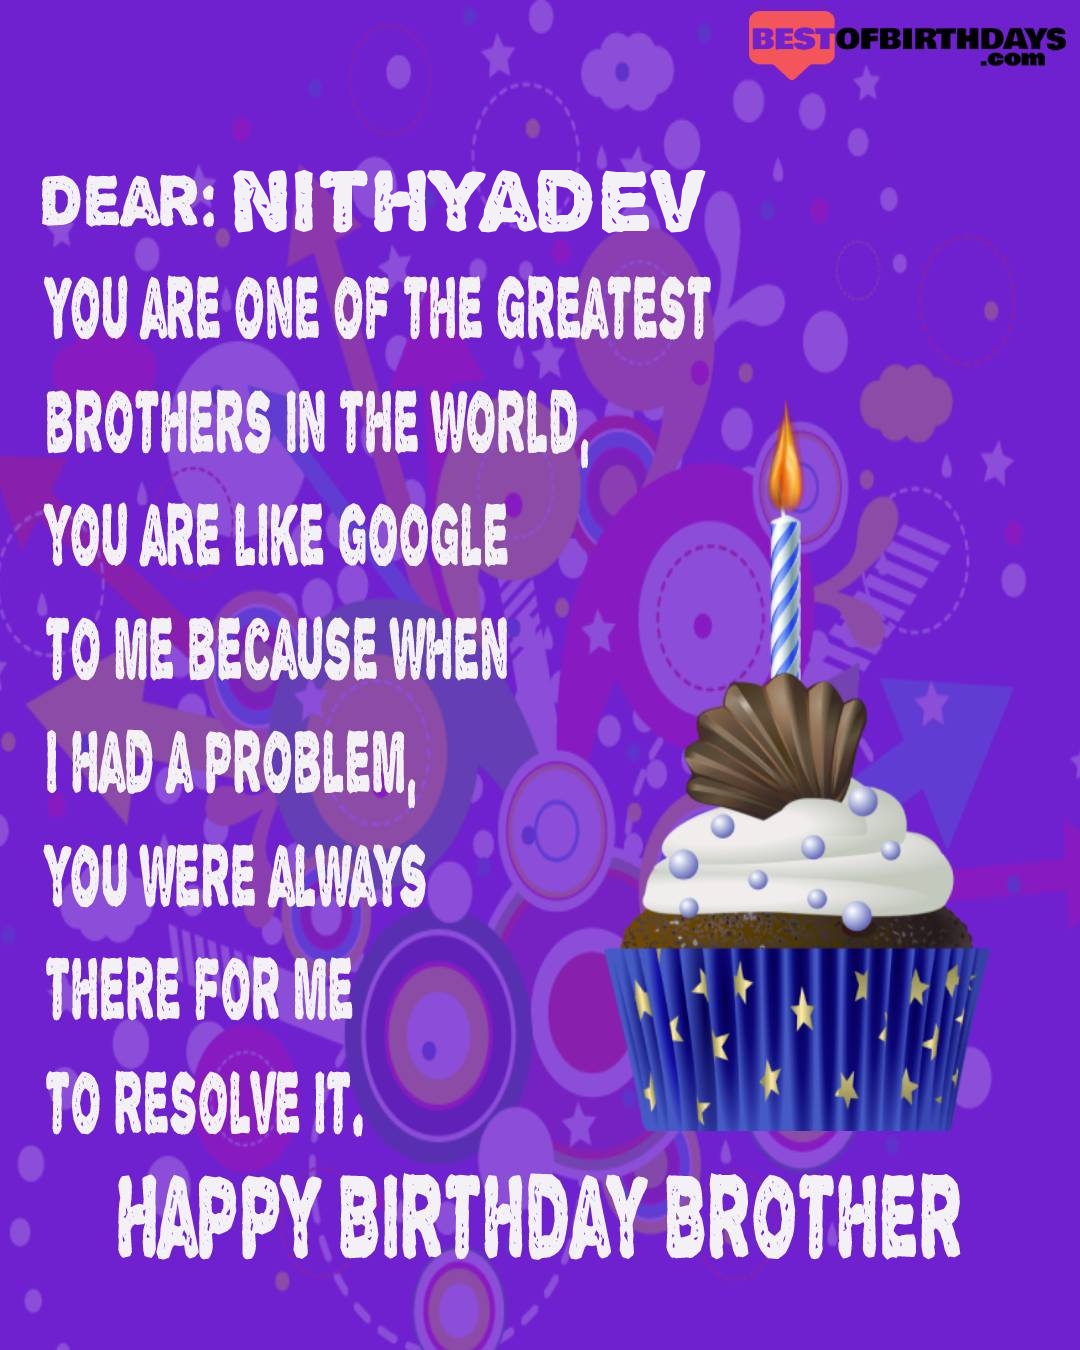 Happy birthday nithyadev bhai brother bro